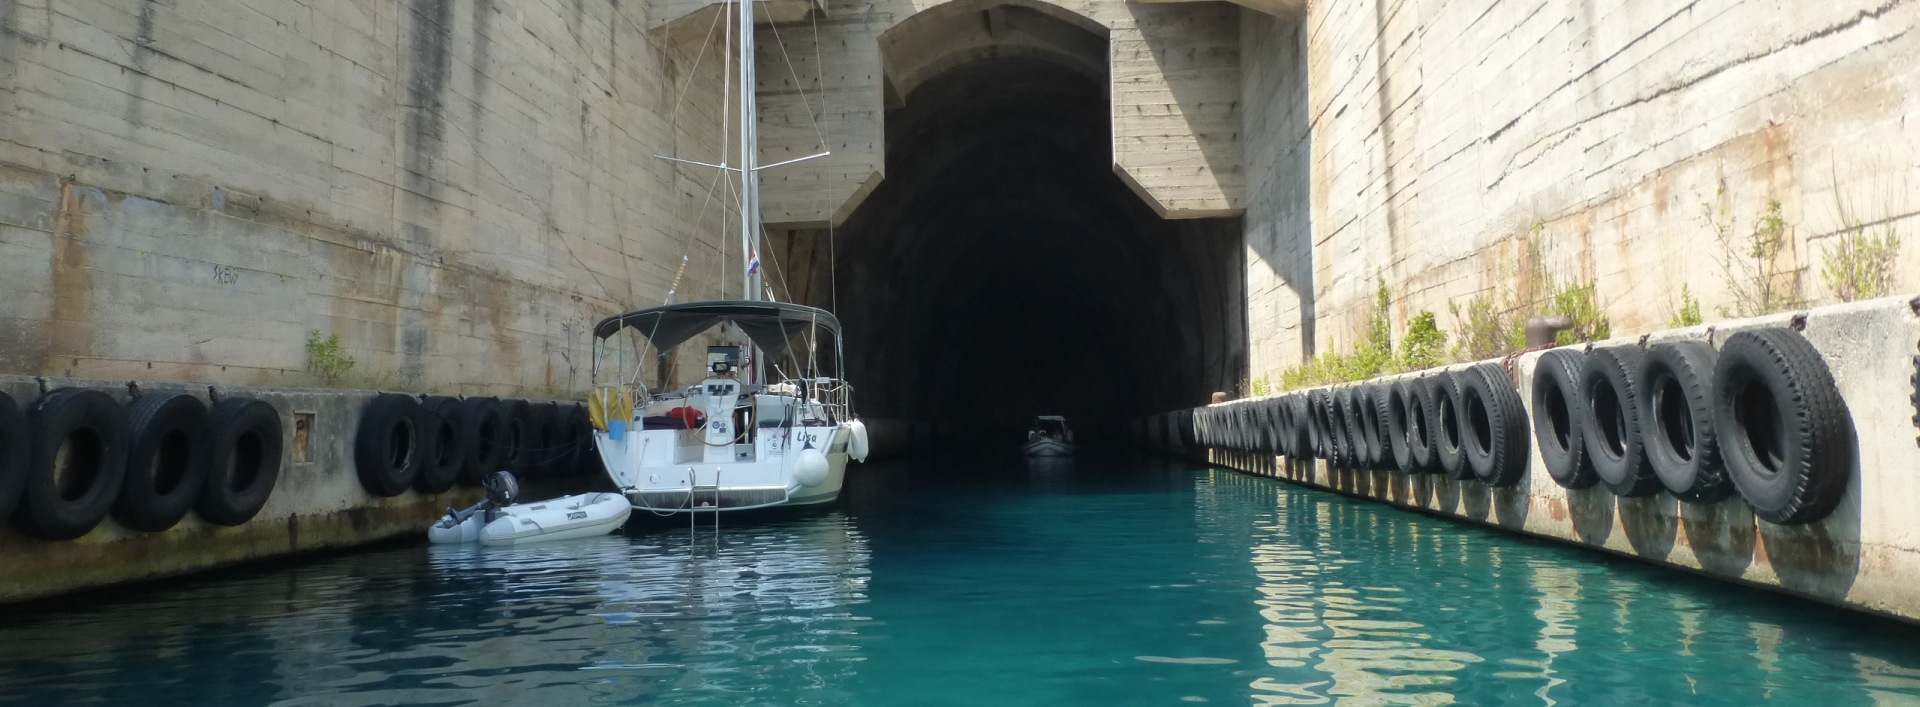 Strategie uit de onderzeeboot-bunker-blog